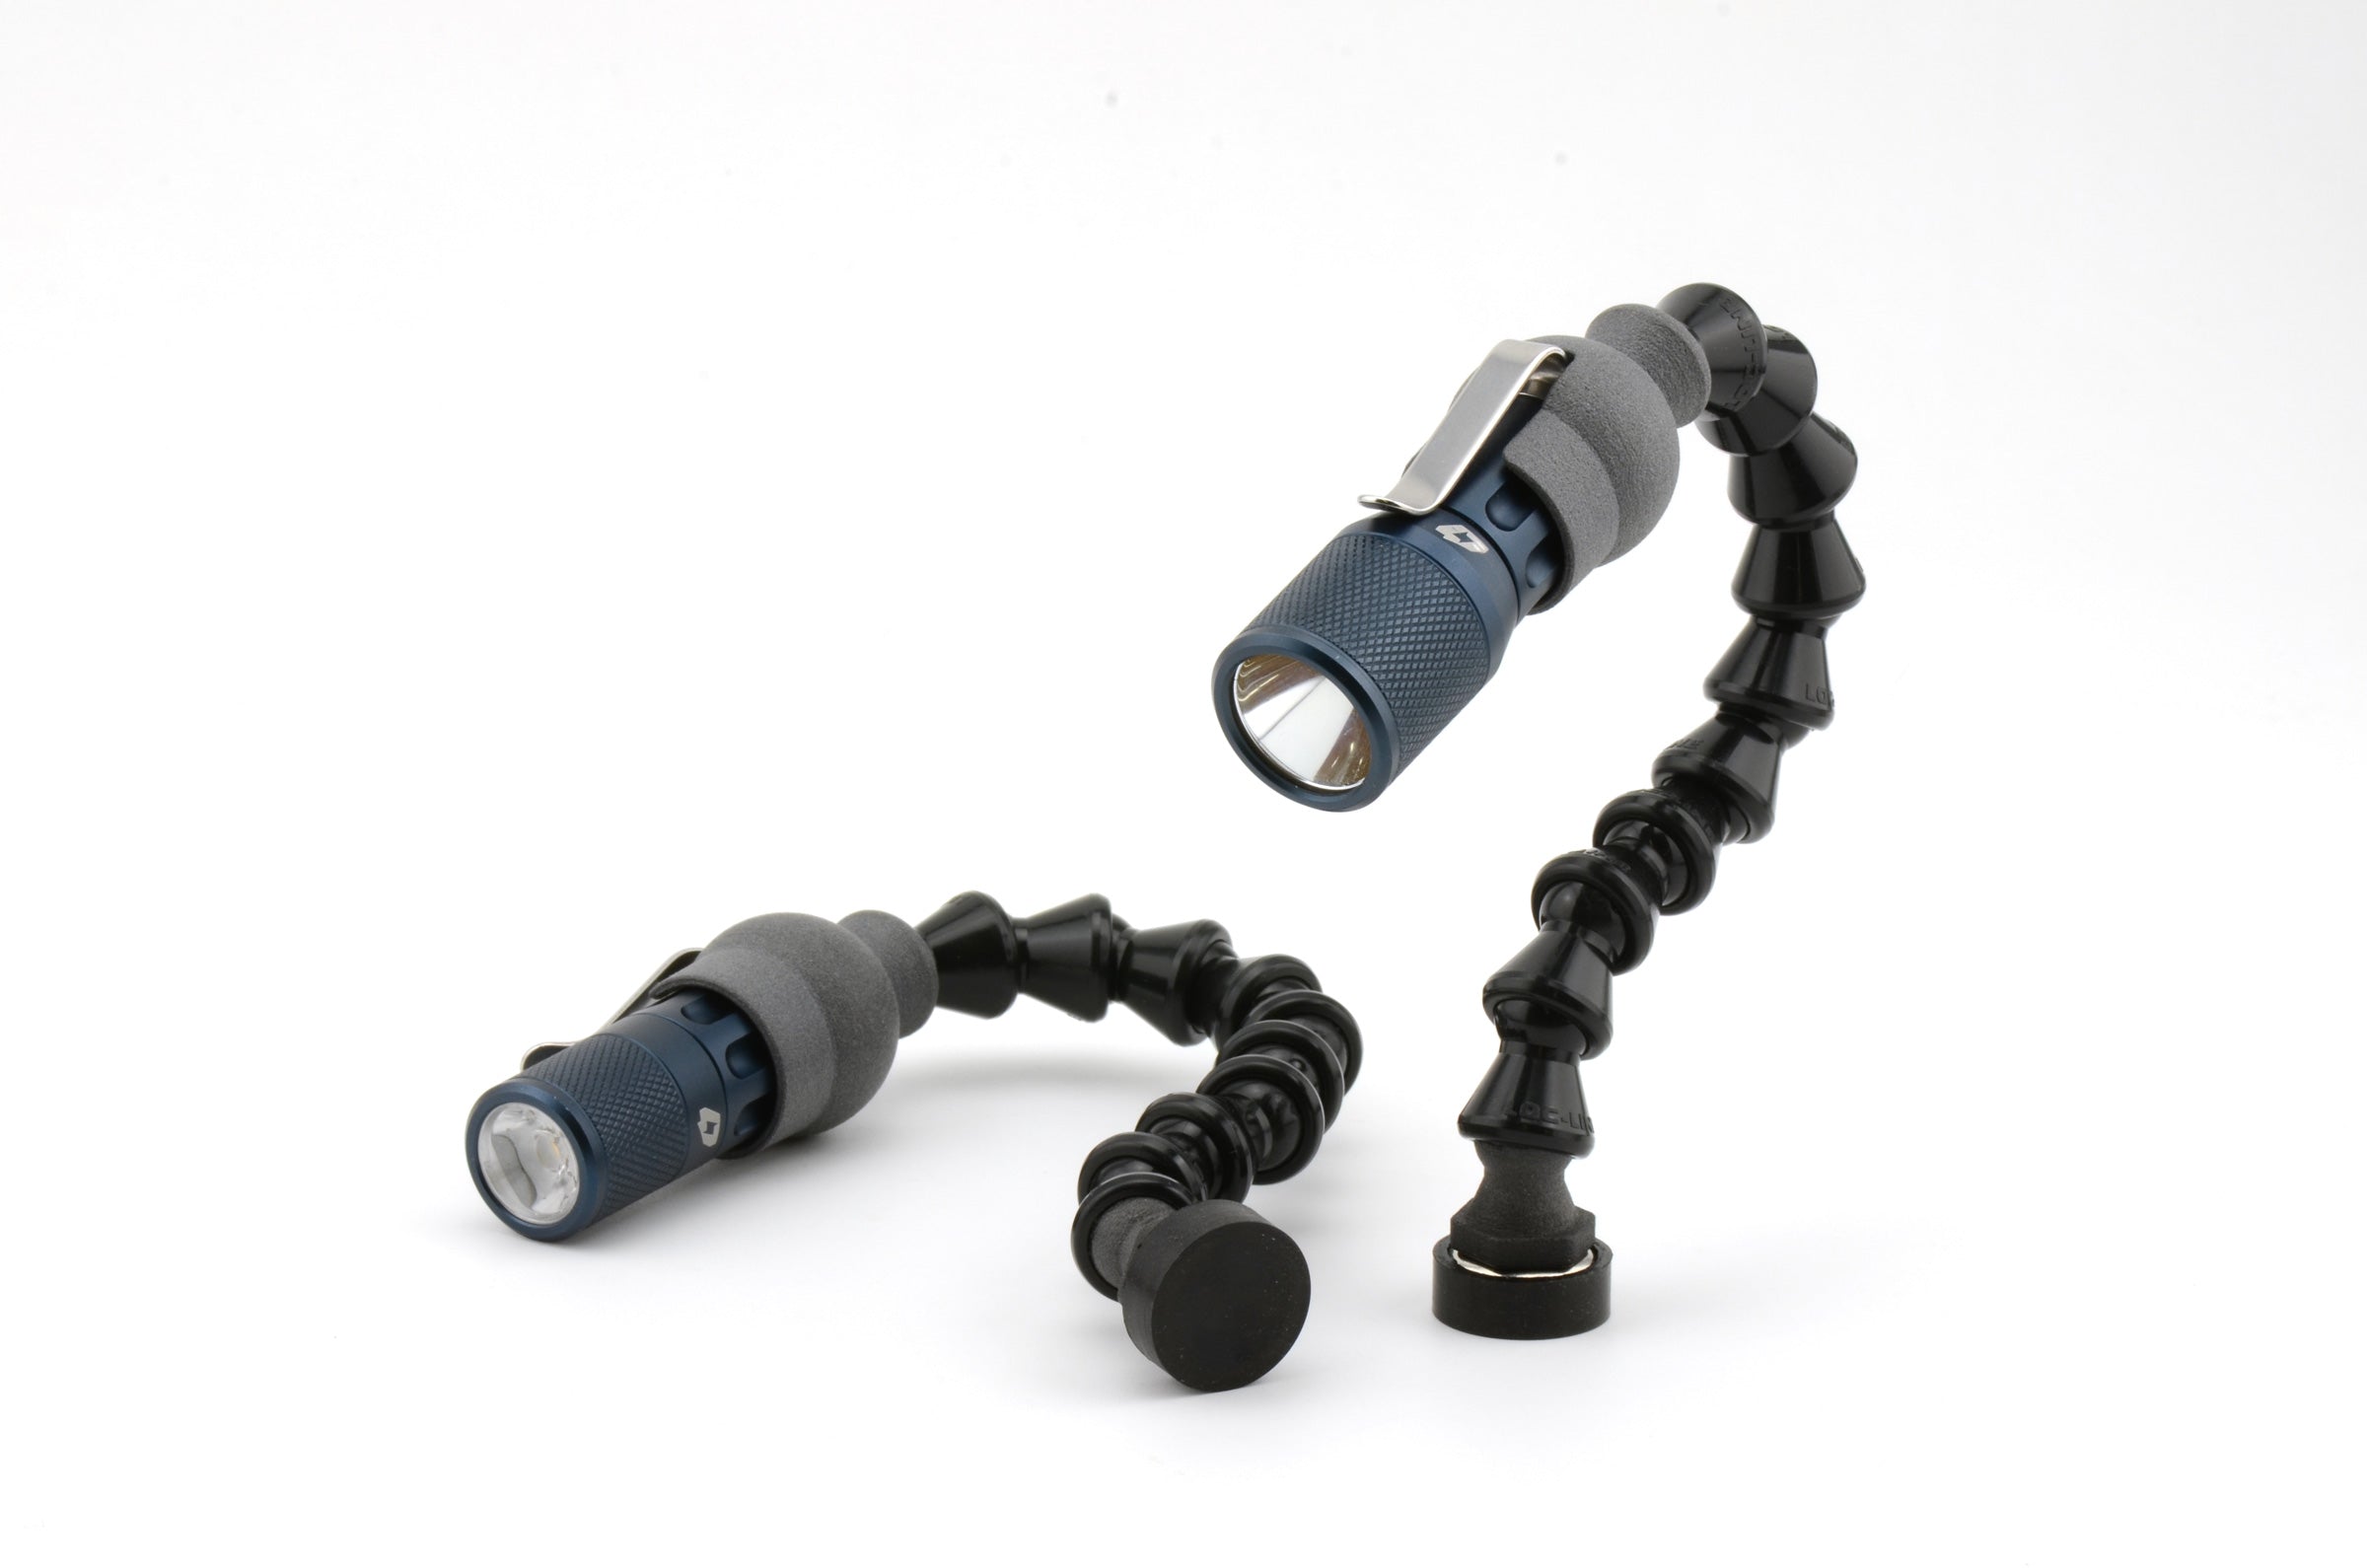 Service parts - Mini USB flexible arm LED Light for MSAK812 